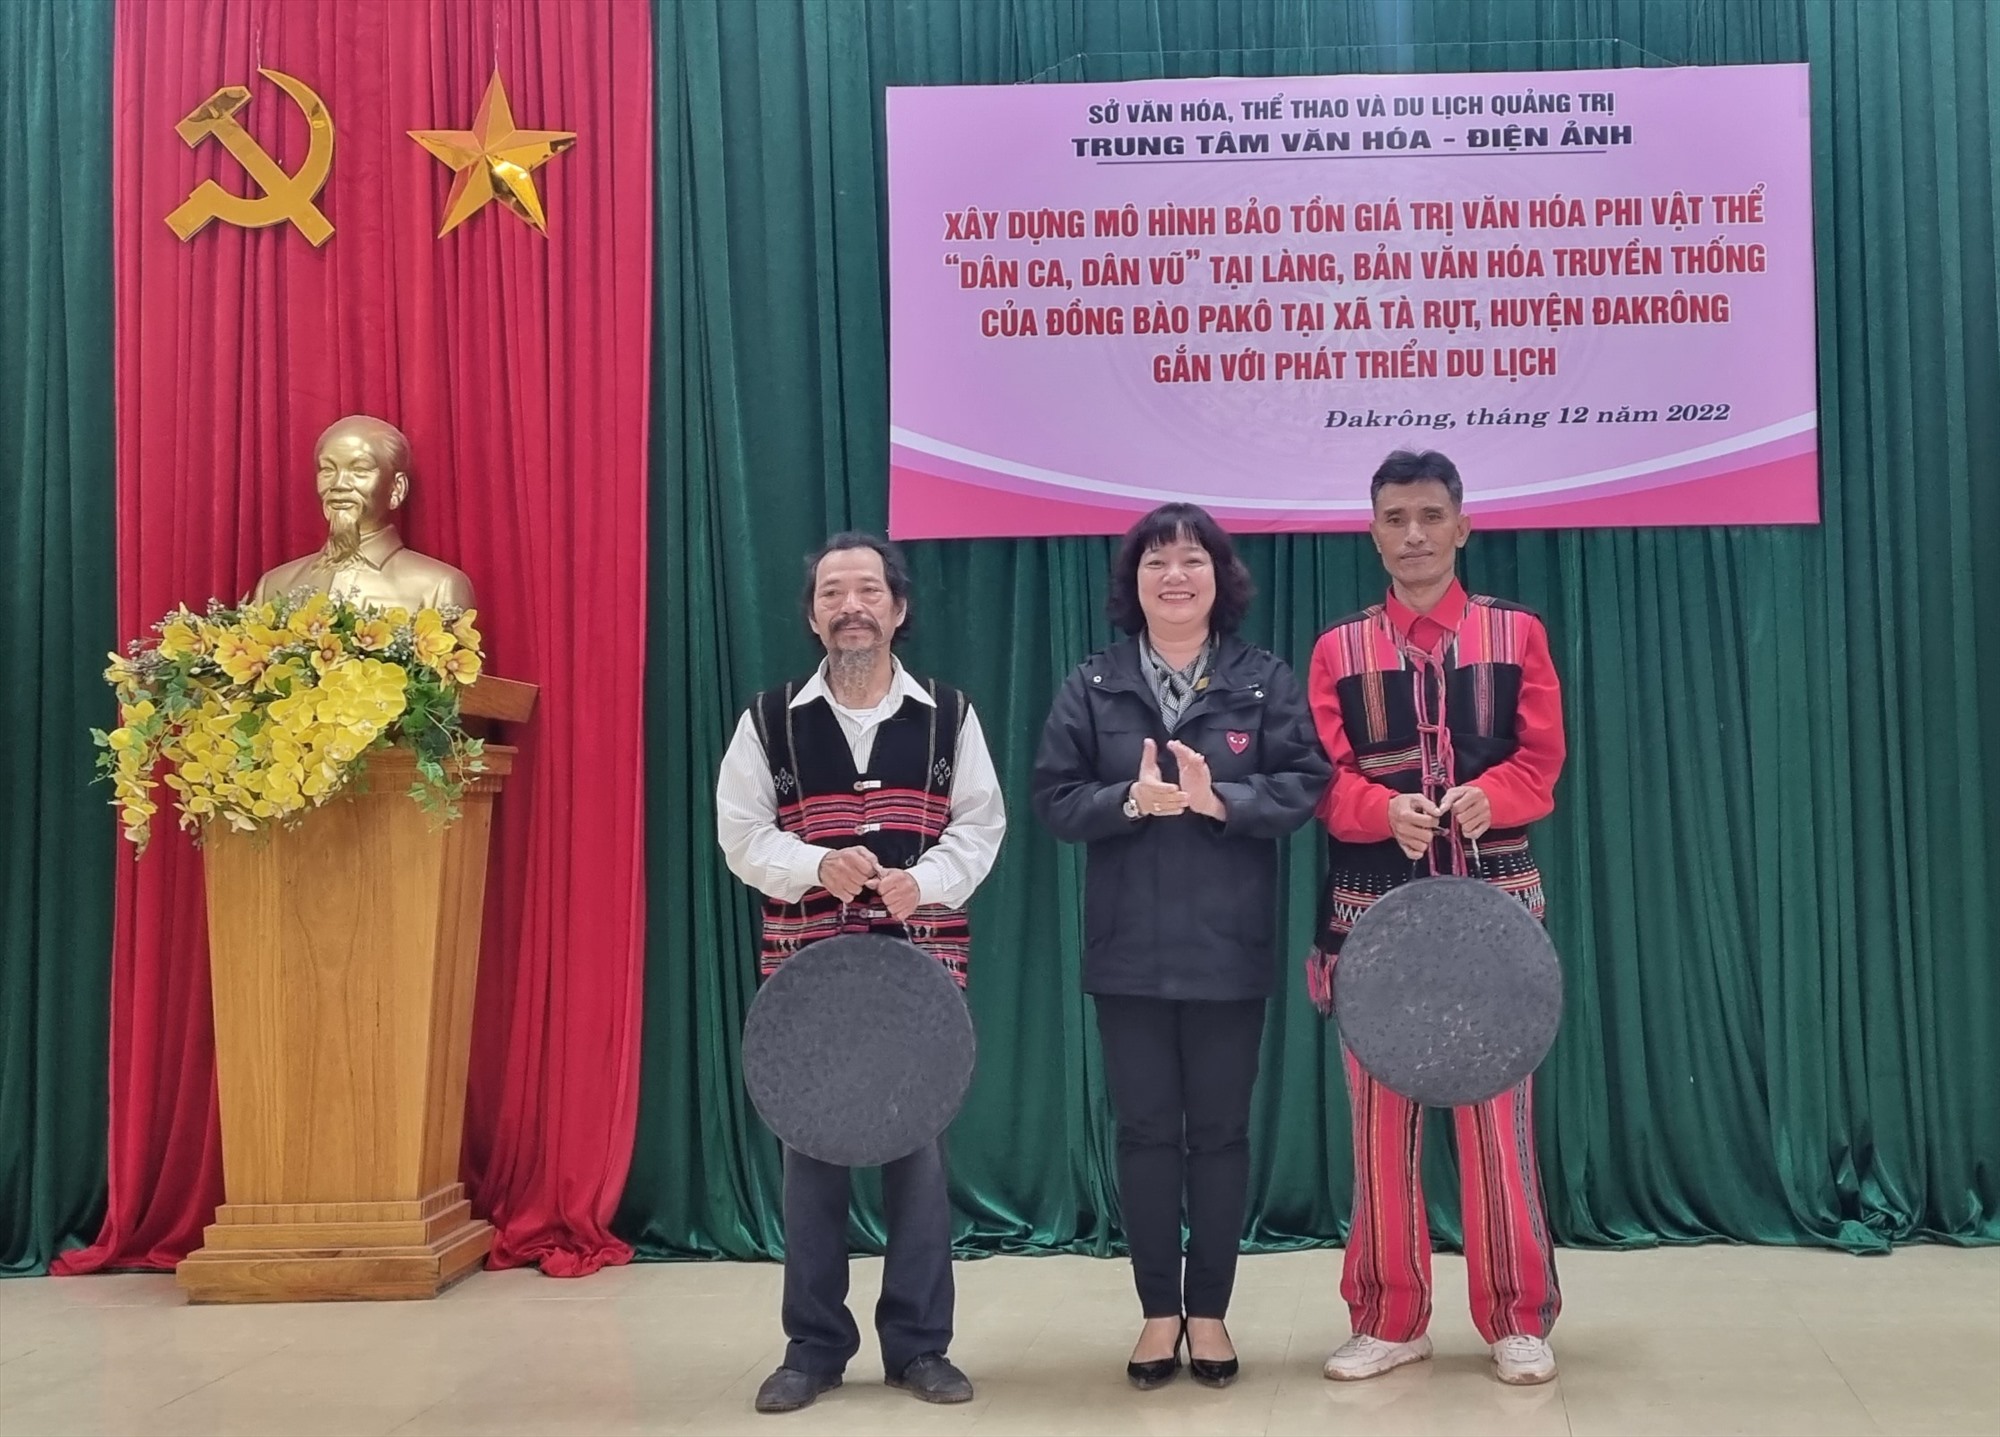 Giám đốc Trung tâm Văn hóa – Điện ảnh tỉnh Lê Thị Việt Hà trao tặng nhạc cụ truyền thống cho đồng bào Pa Kô tại xã Tà Rụt - Ảnh: K.S